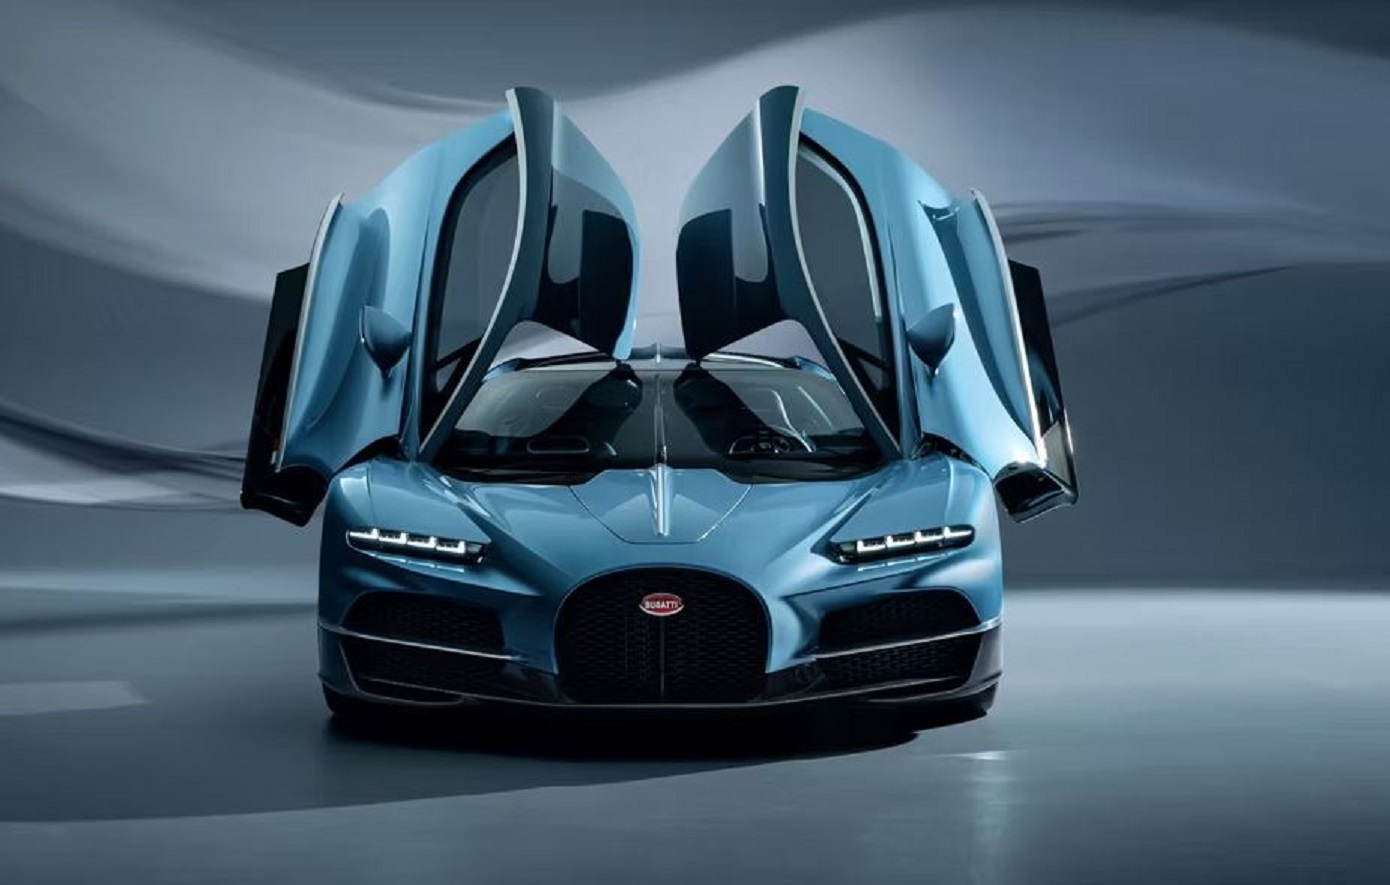 Αυτή είναι η νέα Bugatti Tourbillon: Ένα έργο τέχνης αξίας 3,6 εκατομμυρίων ευρώ